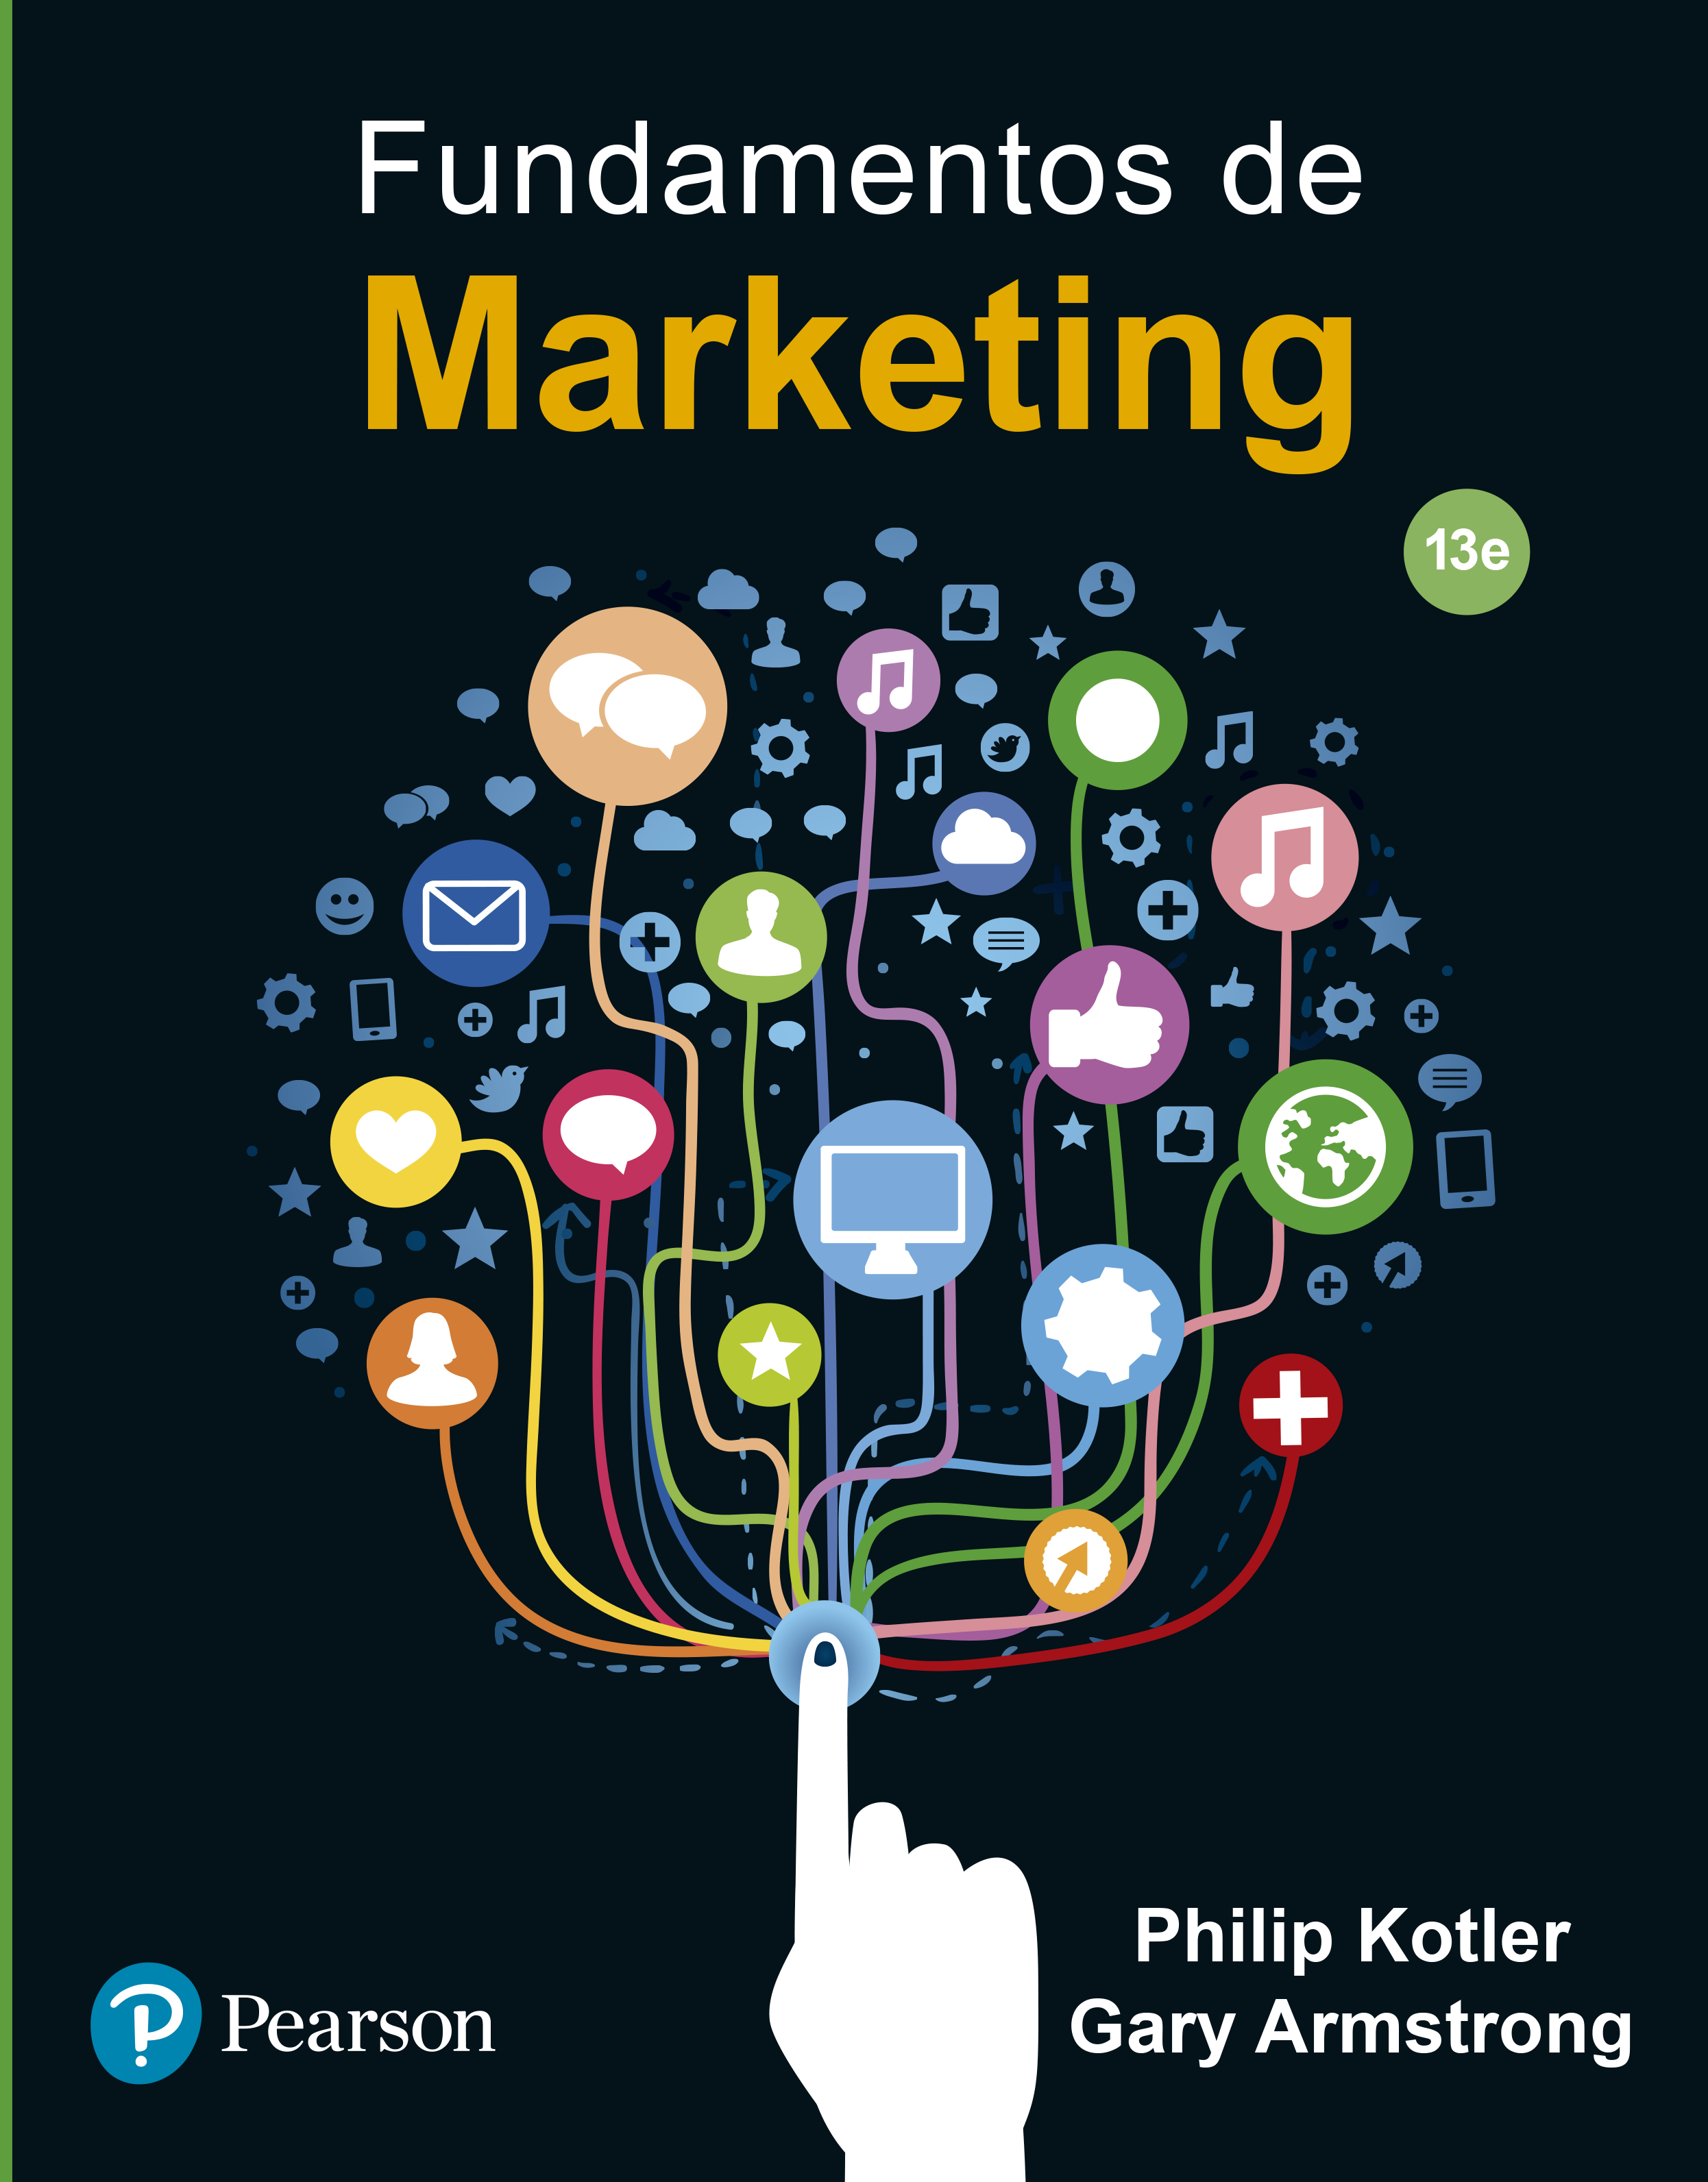 Imagen de portada del libro Fundamentos de Marketing